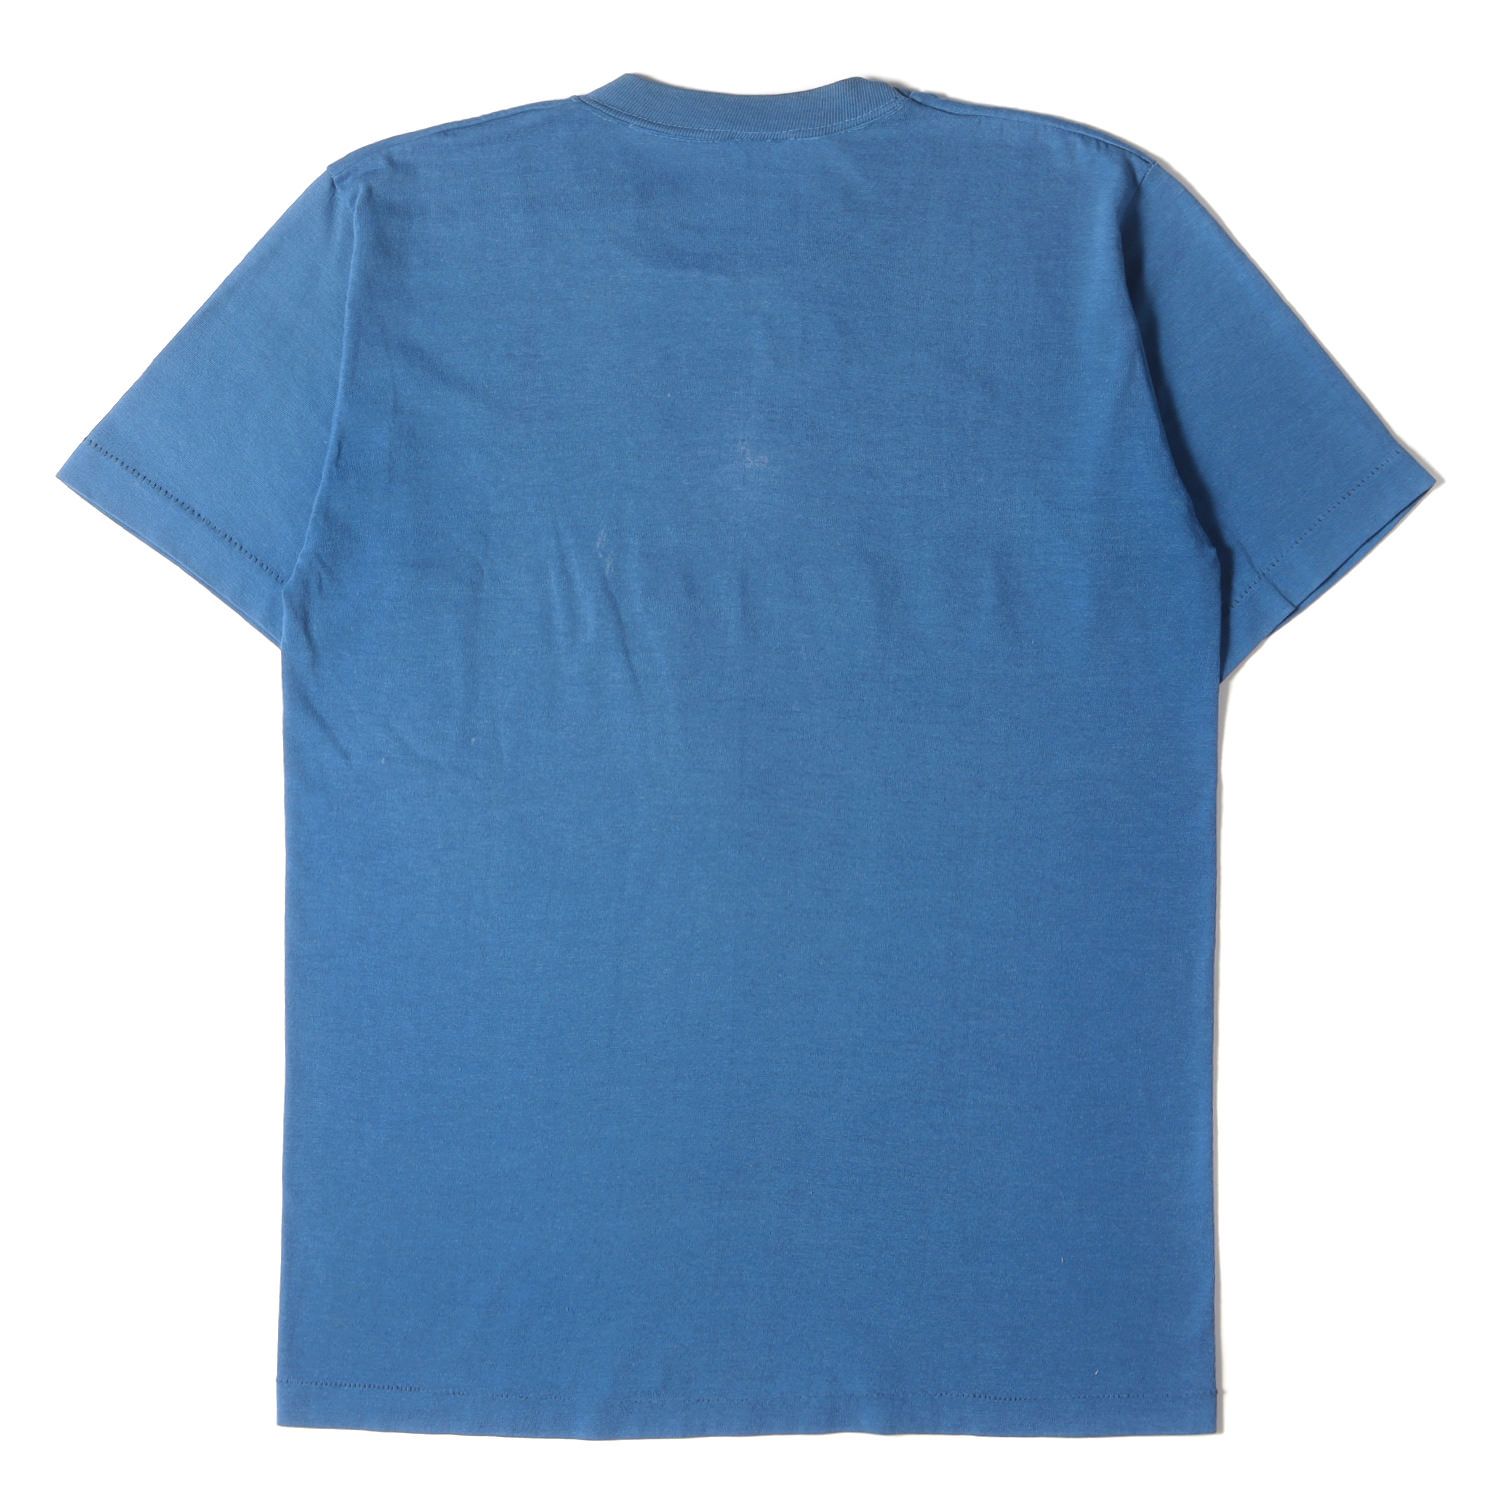 NIKE vintage ナイキ ヴィンテージ 70s オレンジタグ ロゴ プリント クルーネック Tシャツ USA製 ブルー M トップス  カットソー 半袖 アメカジ カジュアル 古着